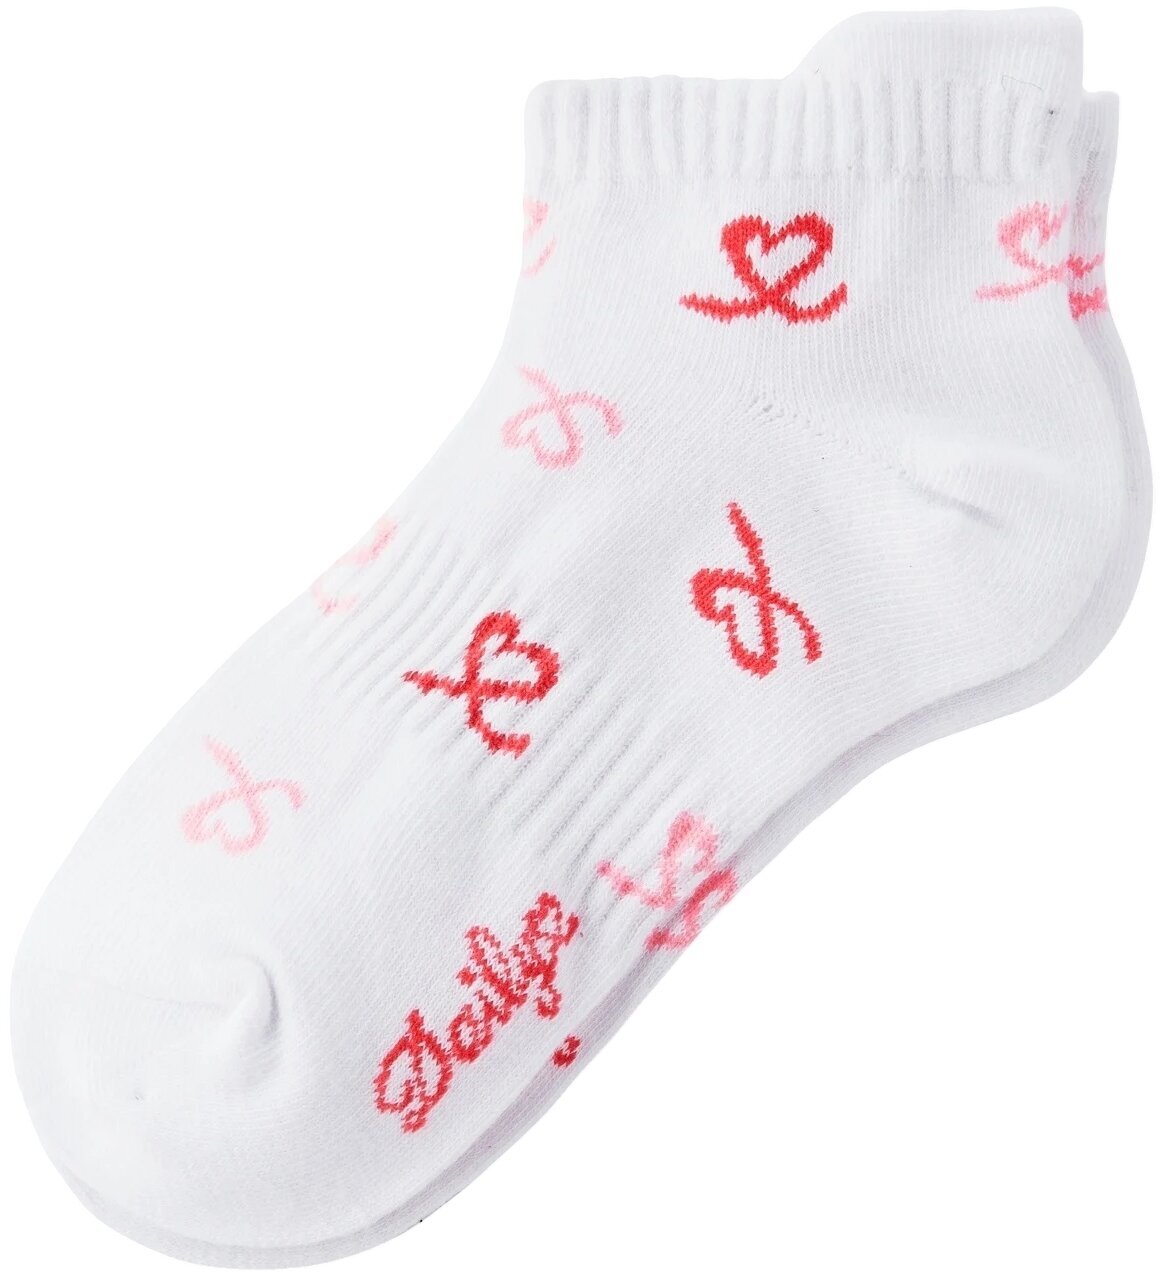 Socks Daily Sports Heart 3-Pack Socks Socks White 36-38